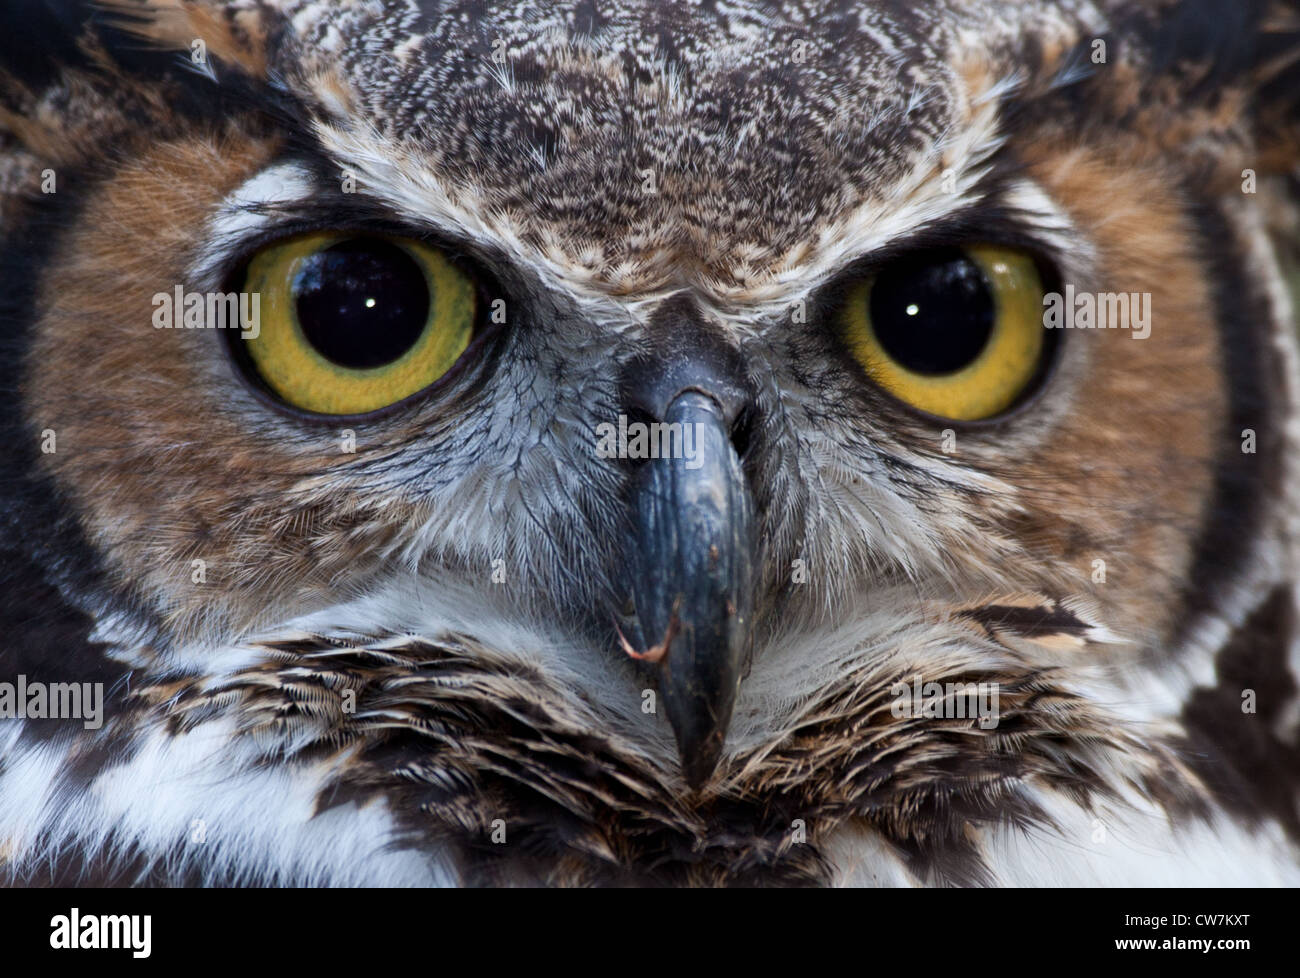 Great Horned Owl Eyes